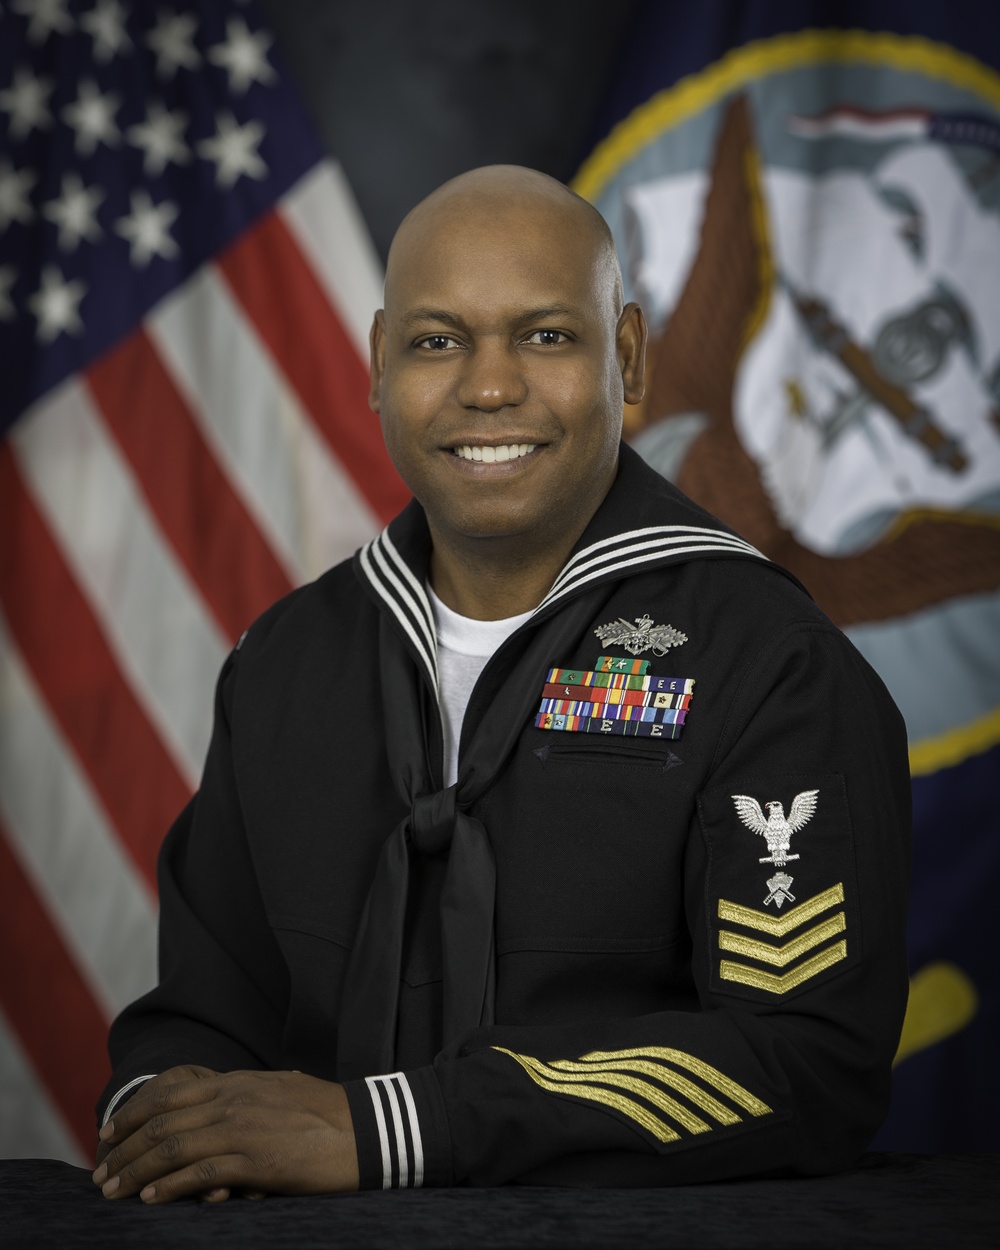 Official portrait, Builder 1st Class (Seabee Combat Warfare) Kentys A. Miller, US Navy